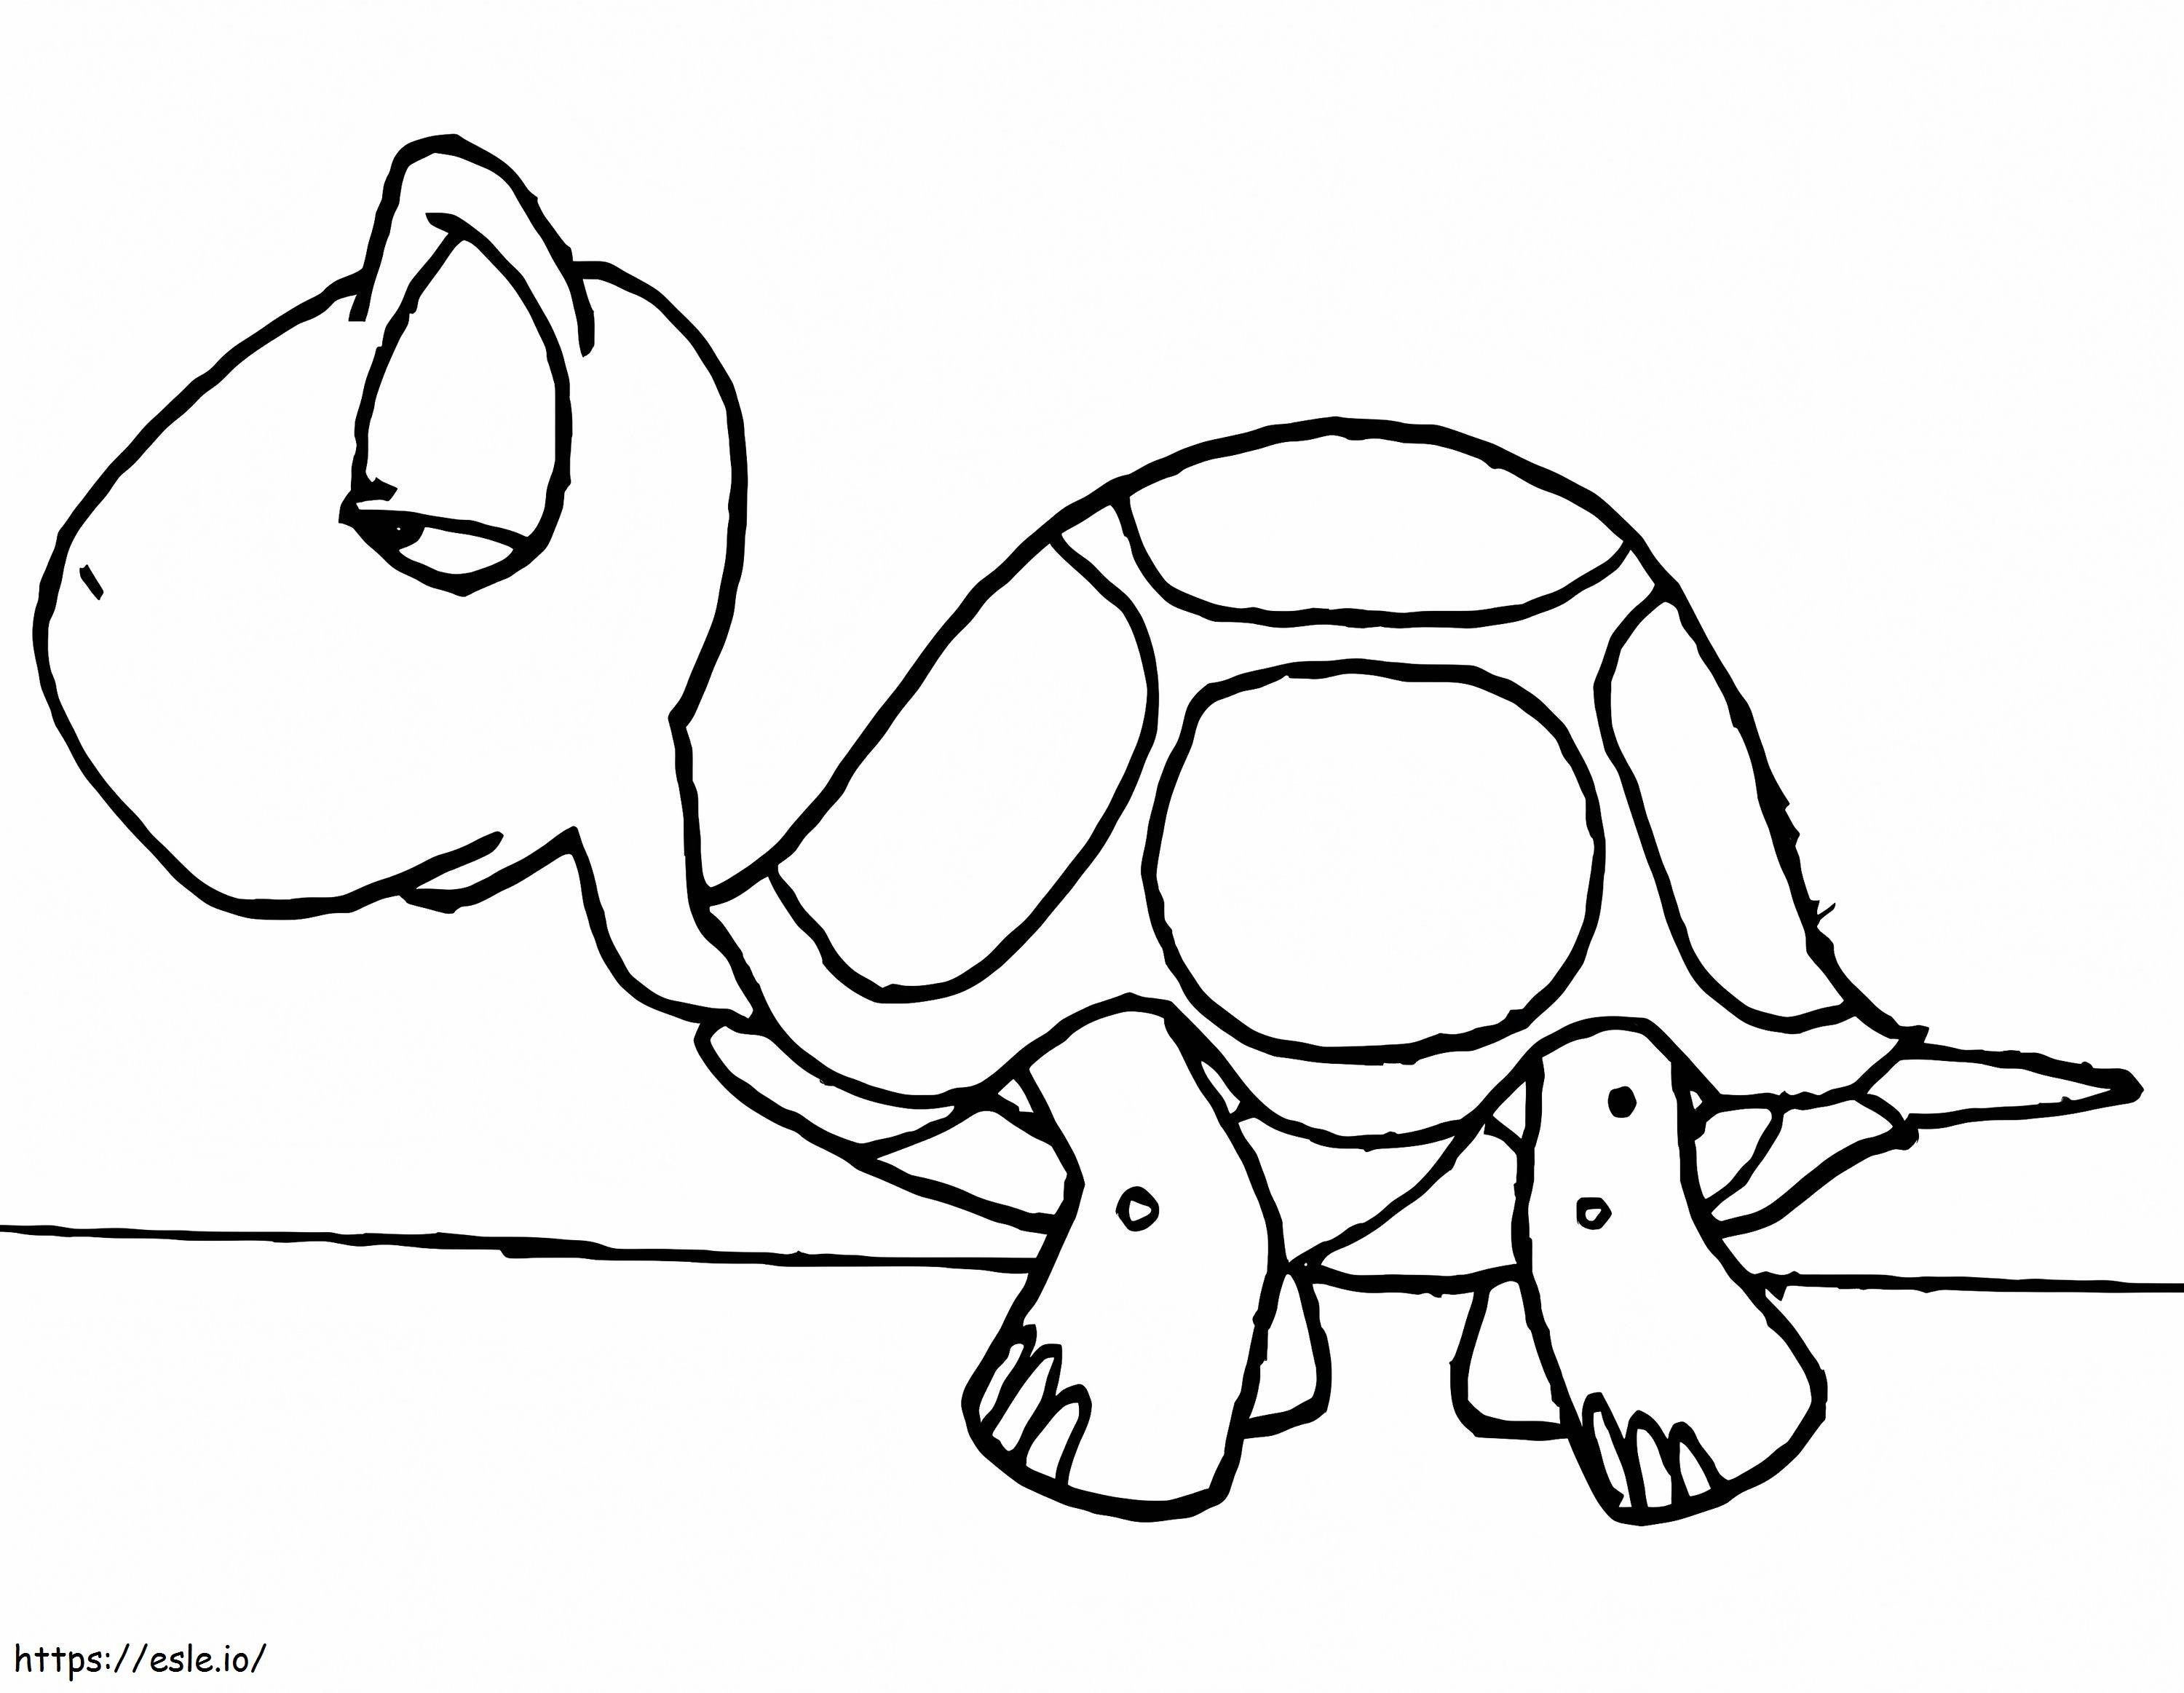 Üzgün kaplumbağa boyama